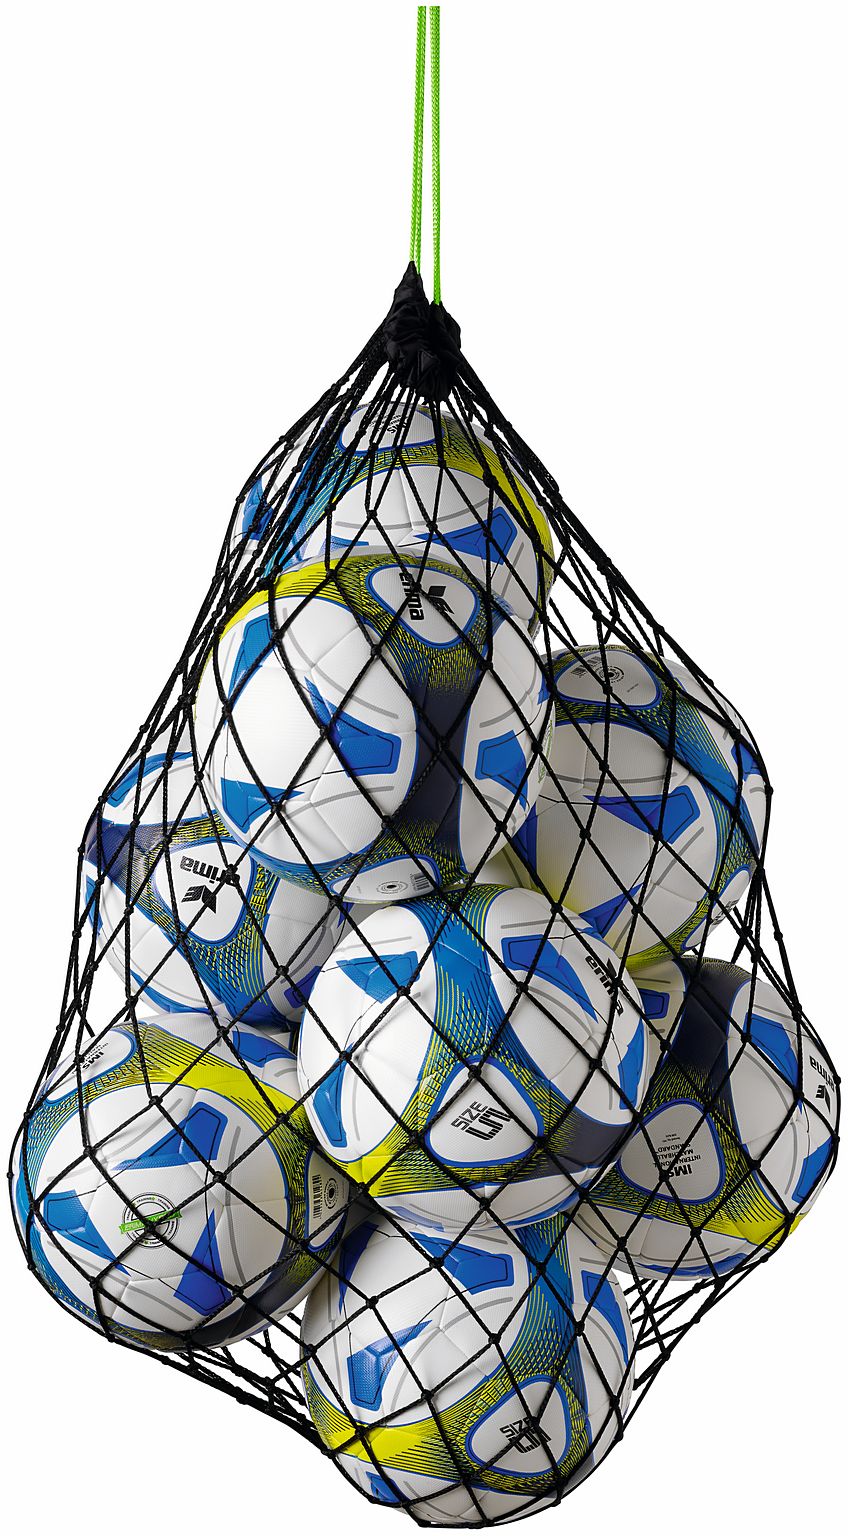 Ball net